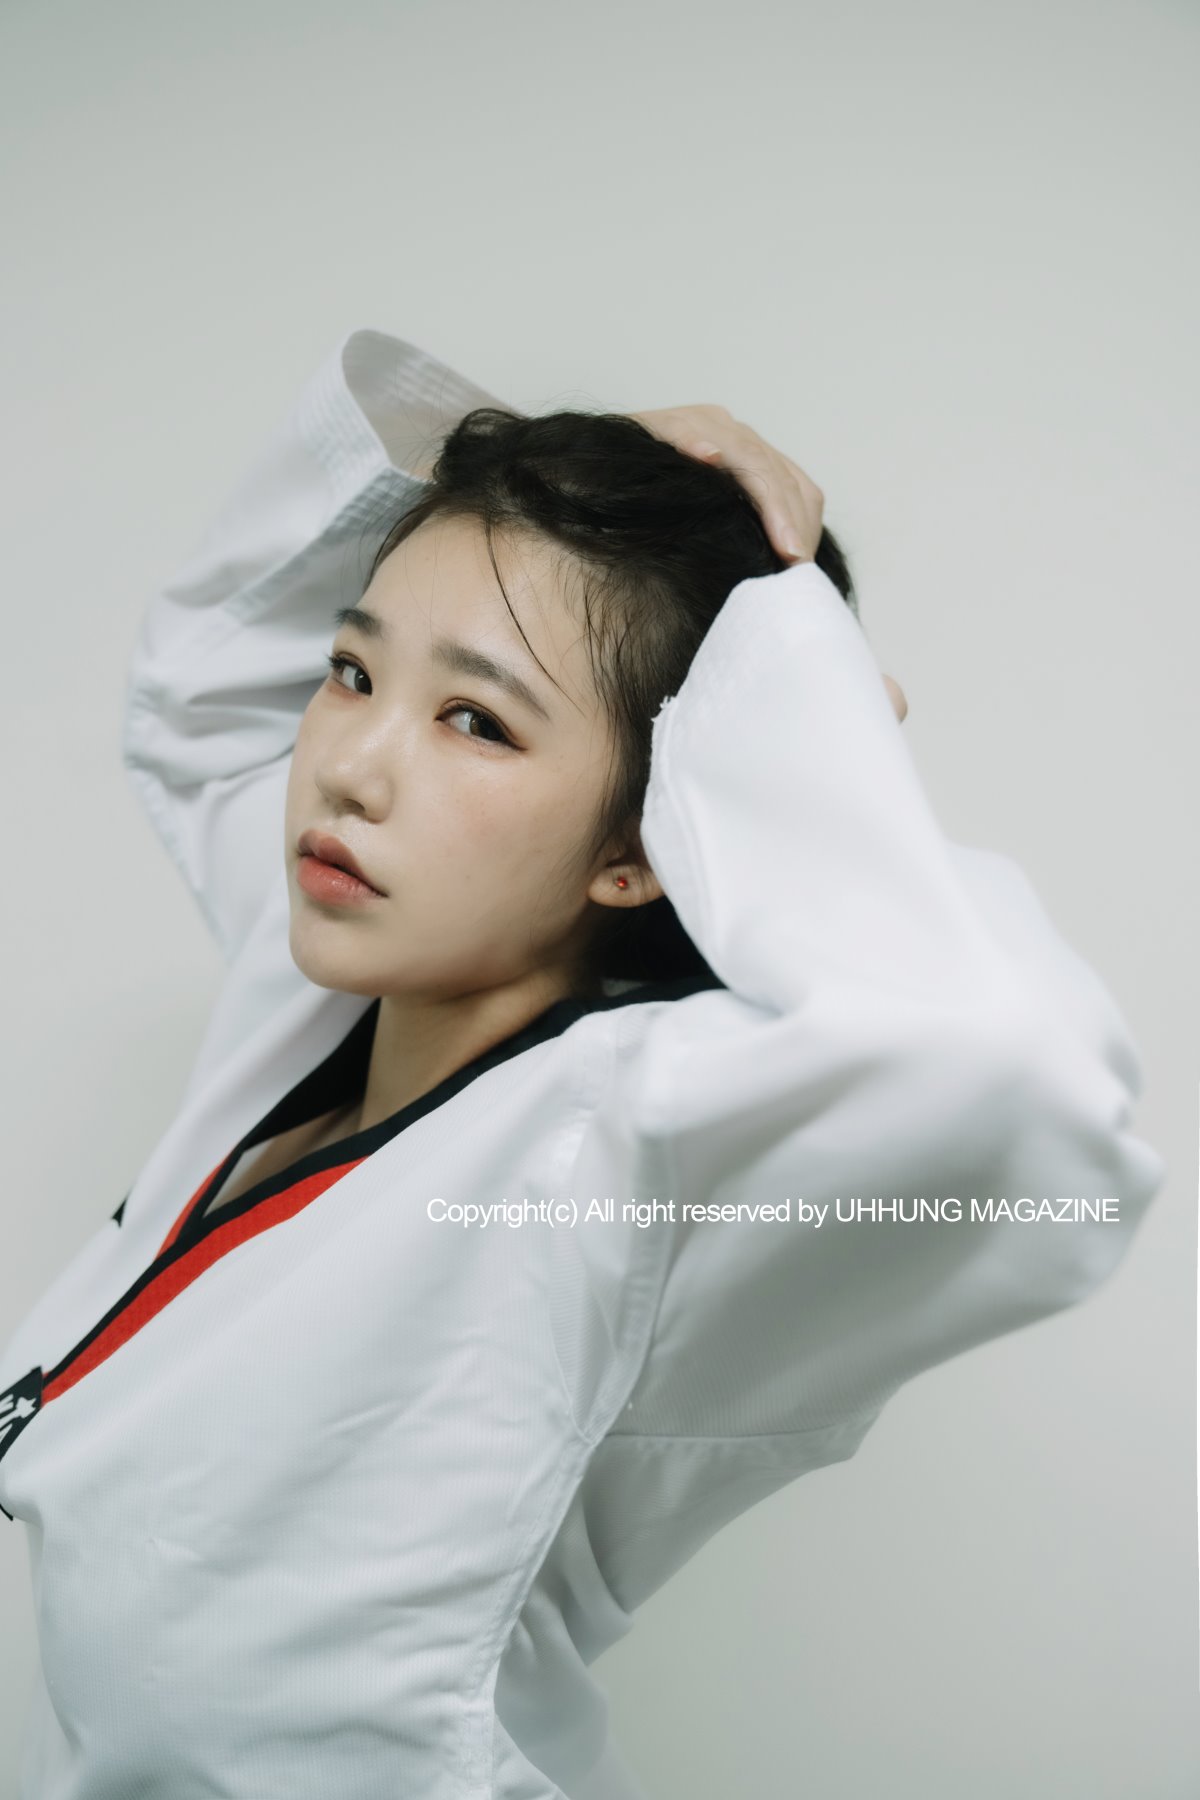 UHHUNG MAGAZINE Jenn Vol 1 Taekwondo Part1 0024 2609859114.jpg